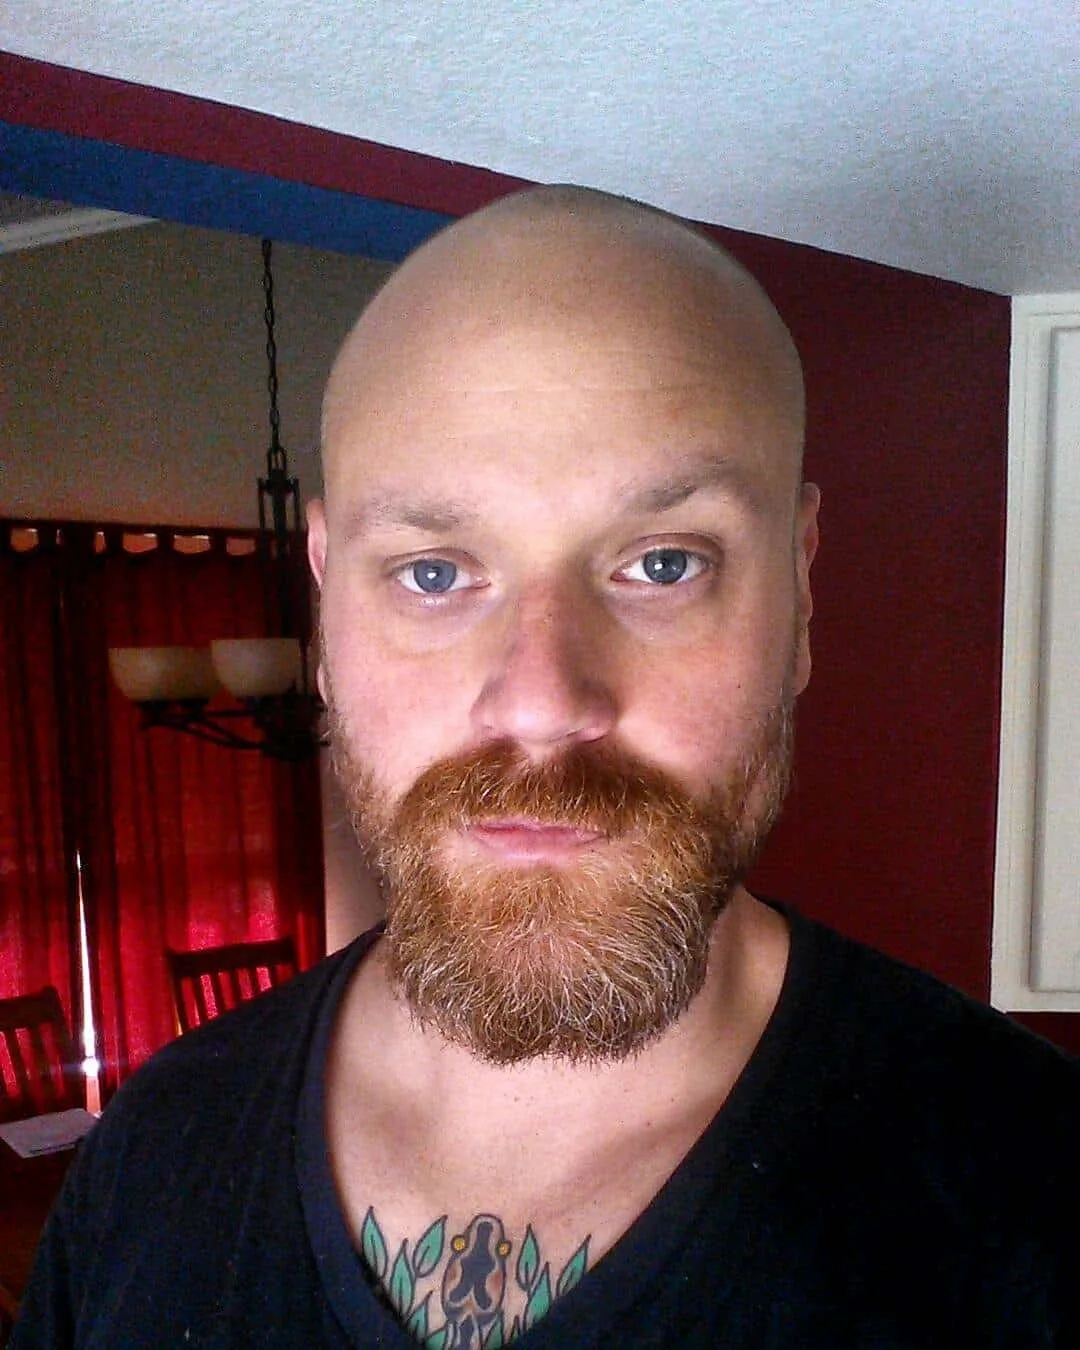 Ginger Beard